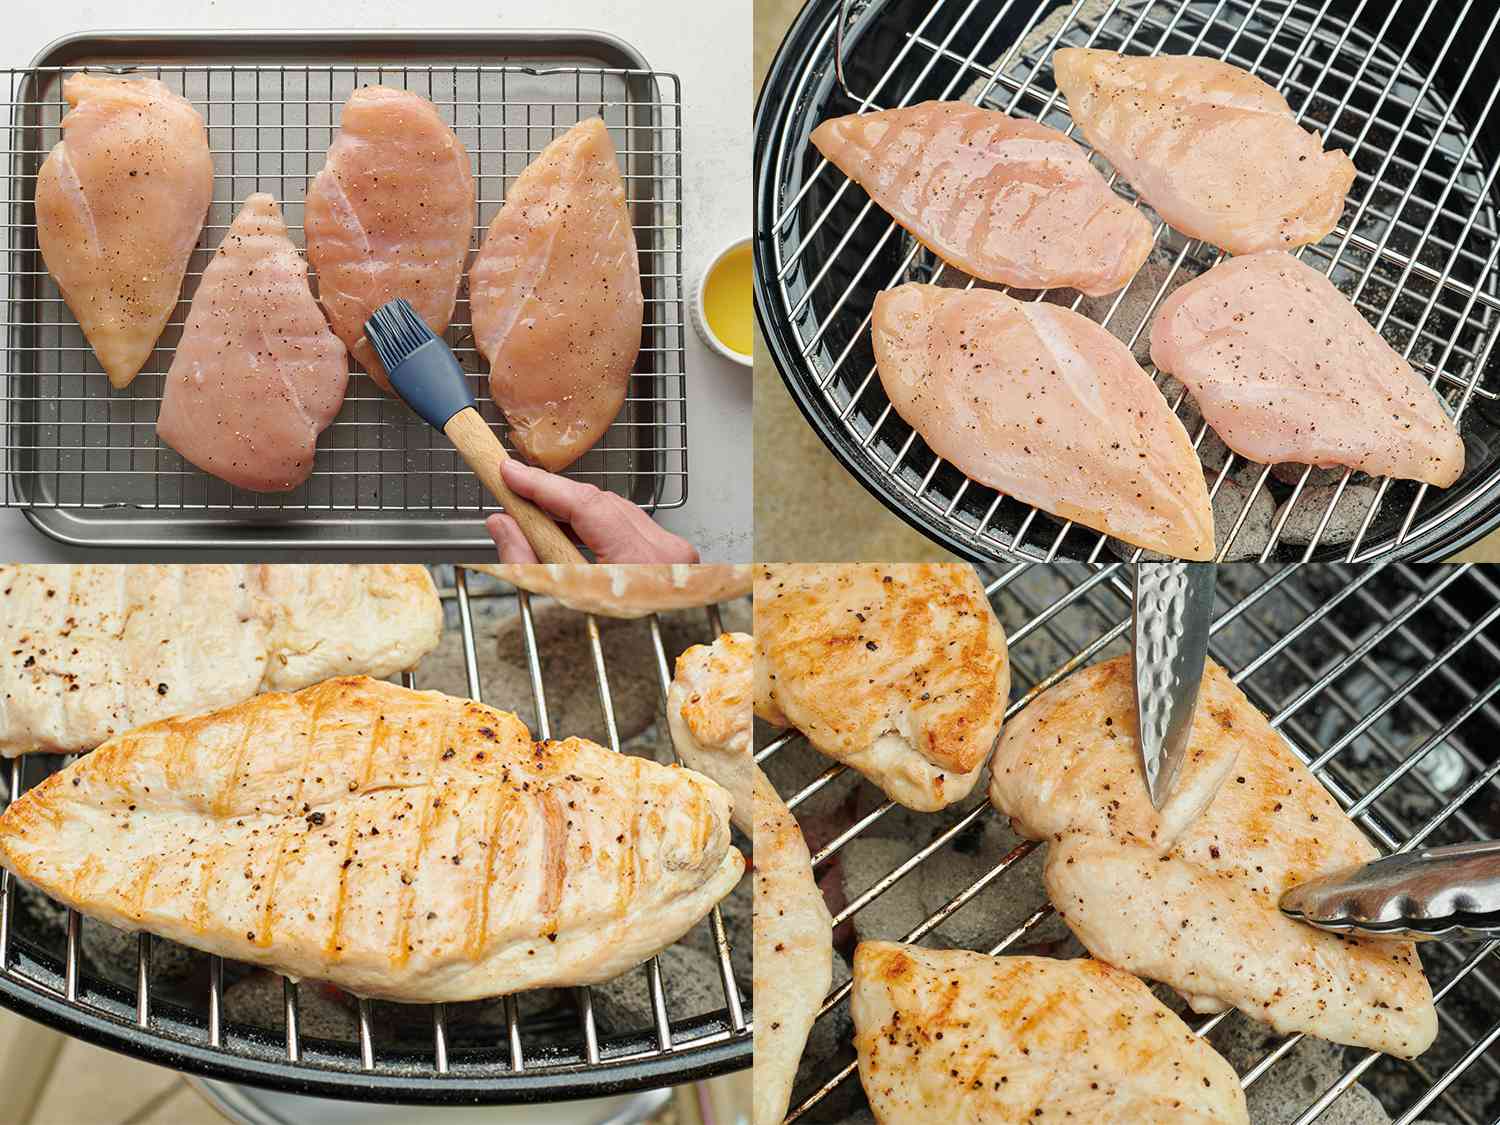 四幅图片的拼贴画。左上角的图片显示了用硅刷抹油的干卤水去骨去皮鸡胸肉。右上方的图片显示油鸡胸放在水壶烧烤。左下角的图片显示了烤架上已经烤熟的鸡胸肉。右下角的图片显示，其中一个鸡胸肉正被一把钳子拉开，表明内部已经完全熟了。gydF4y2Ba